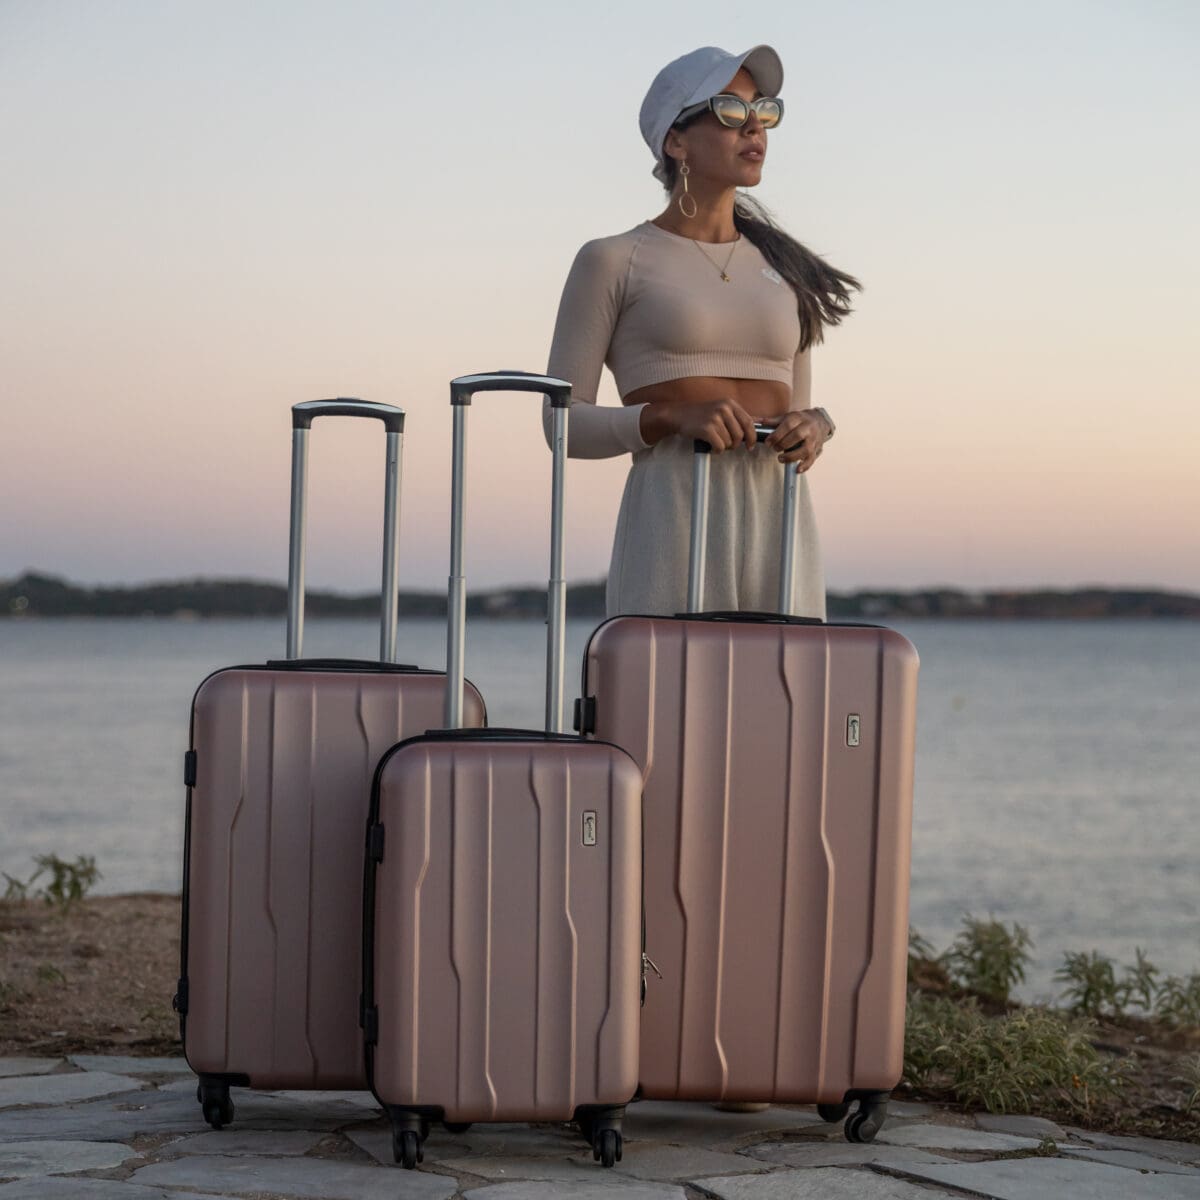 Βαλίτσες μικρή(καμπίνας) ,μεσαία , μεγάλη με κλειδαριά , υλικό abs σε χρώμα ροζ .